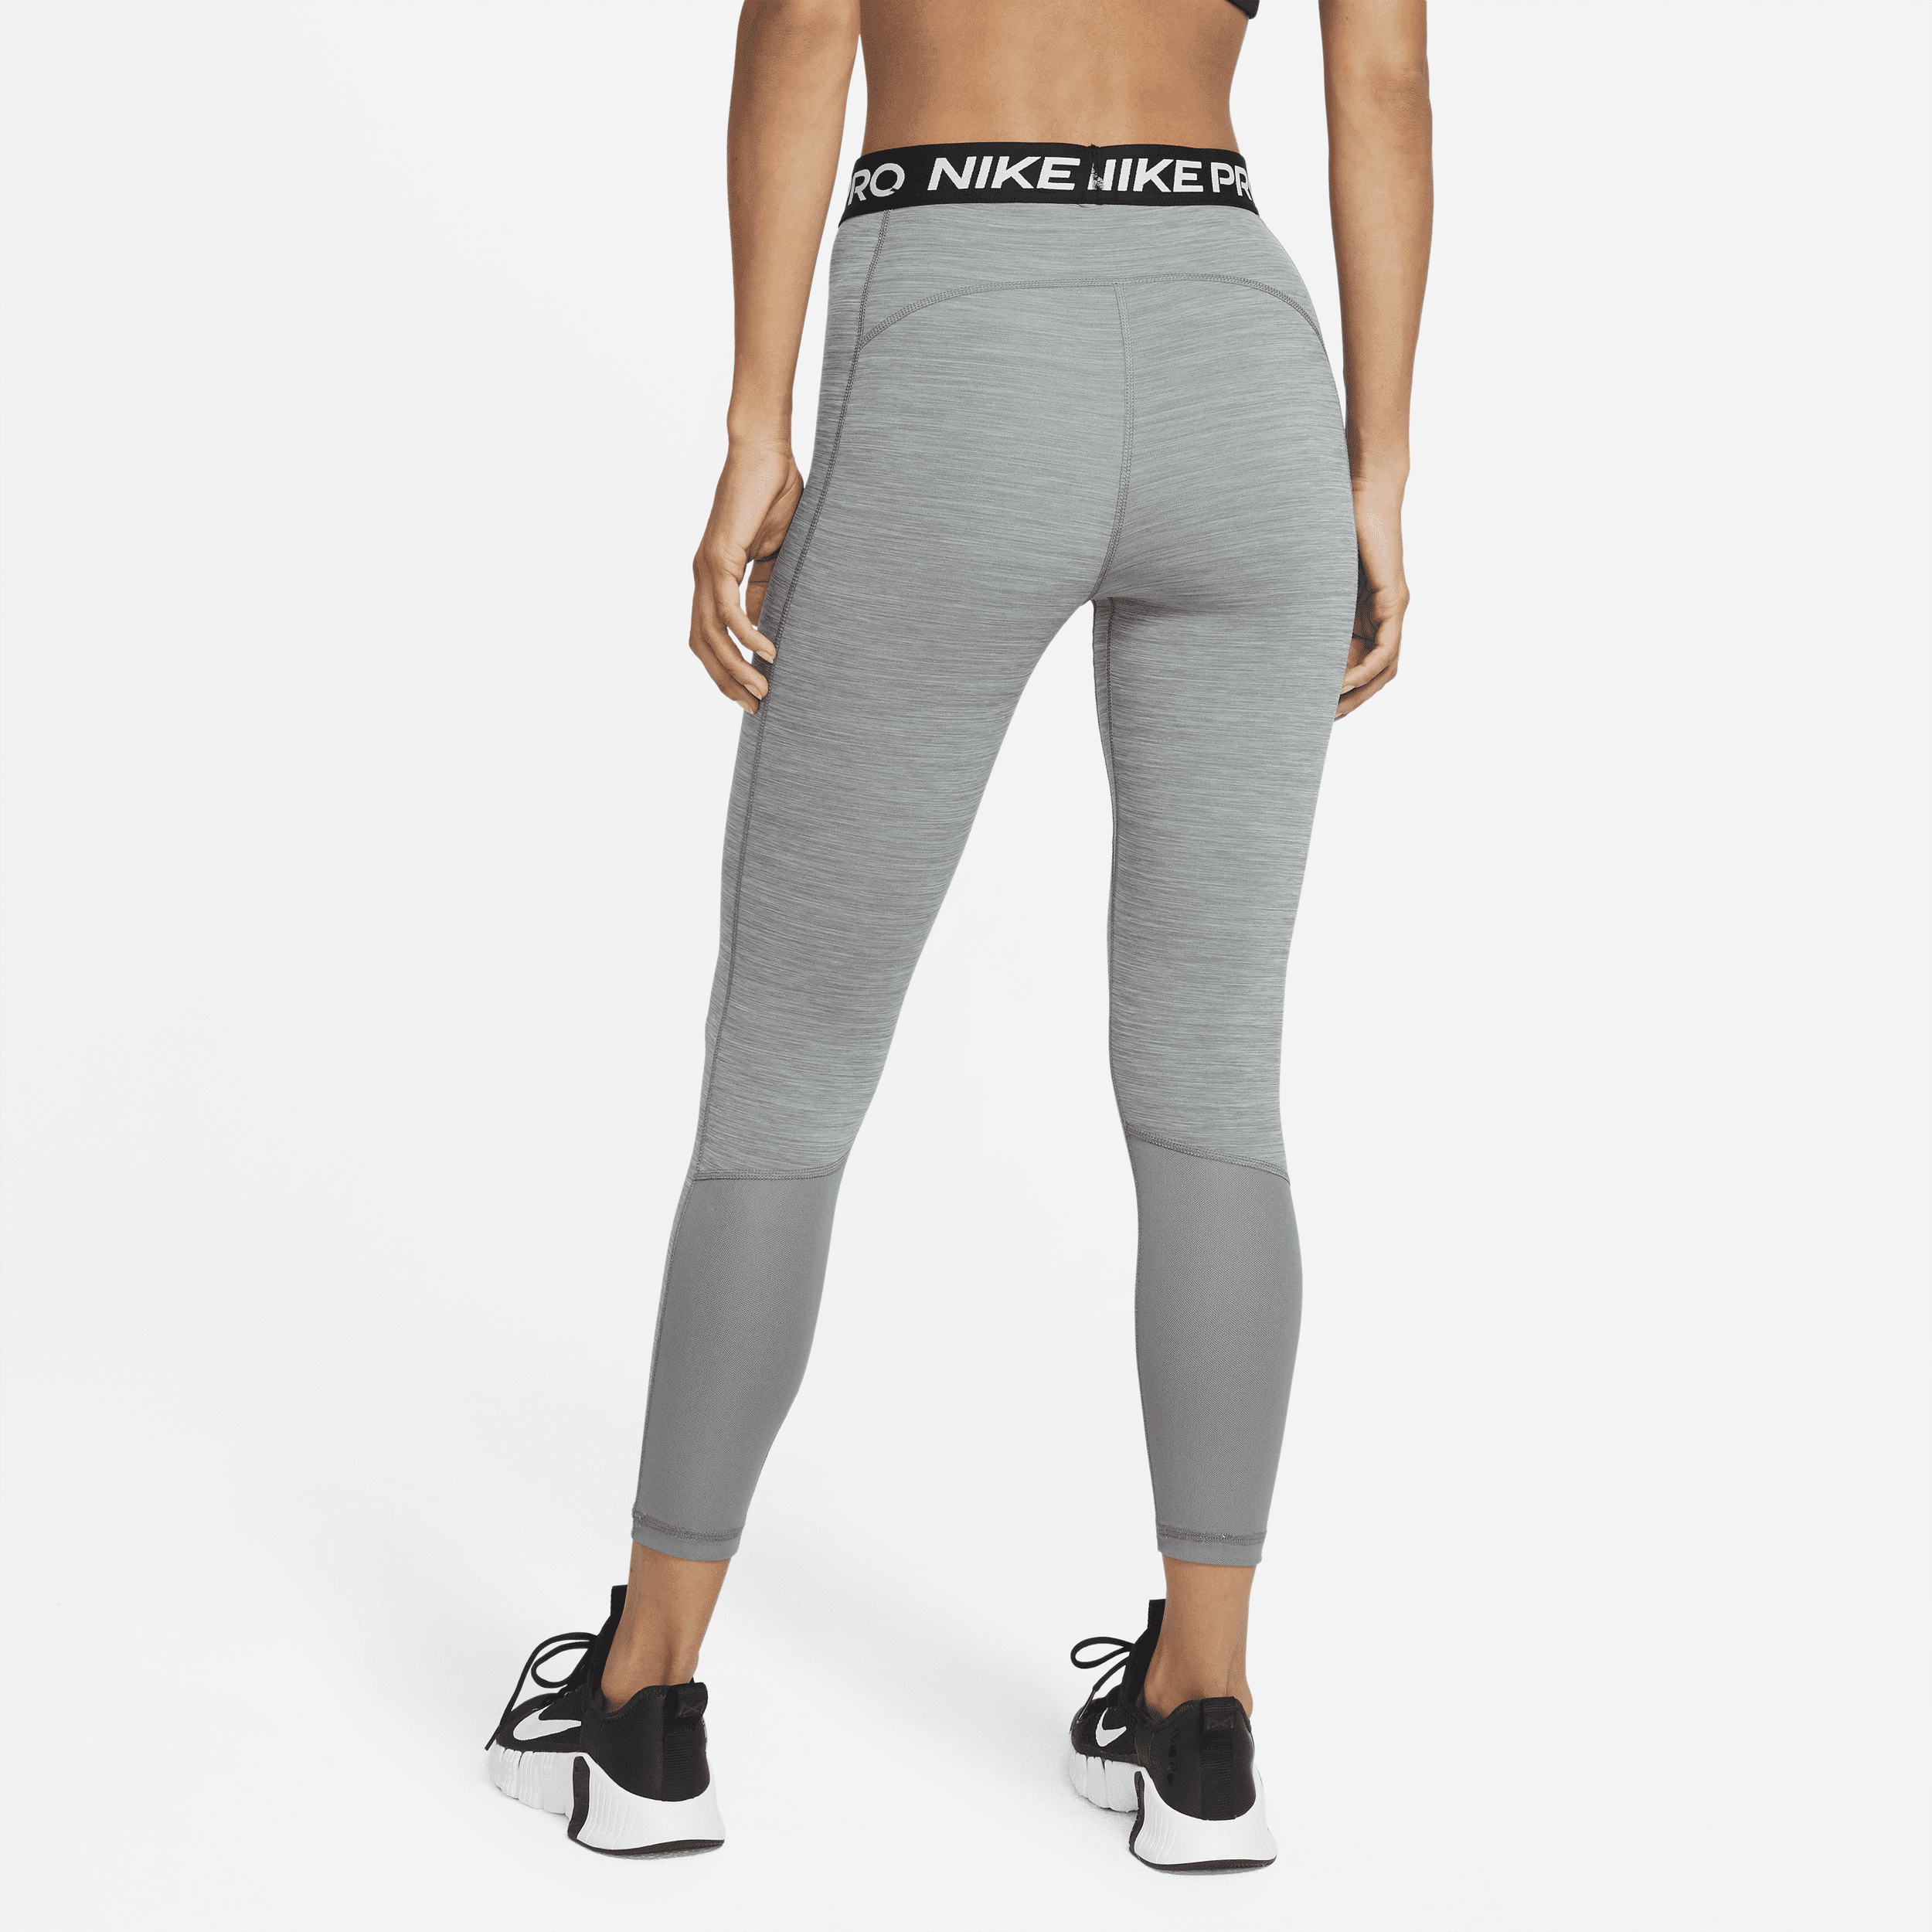 Nike Pro 365 High-Waisted 7/8 Length Leggings in Grey | eBay